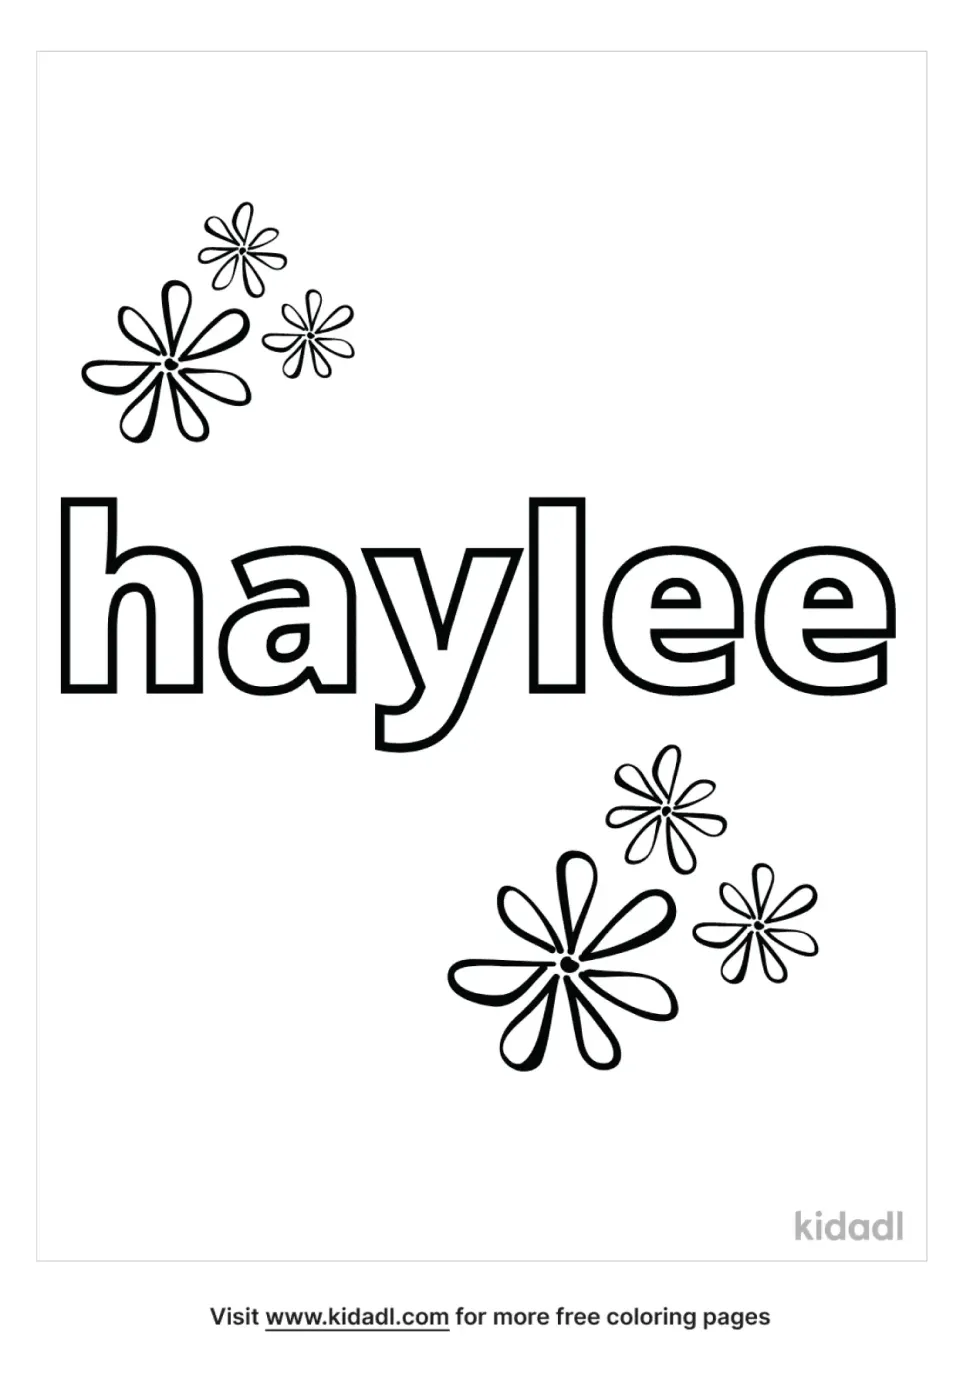 Haylee